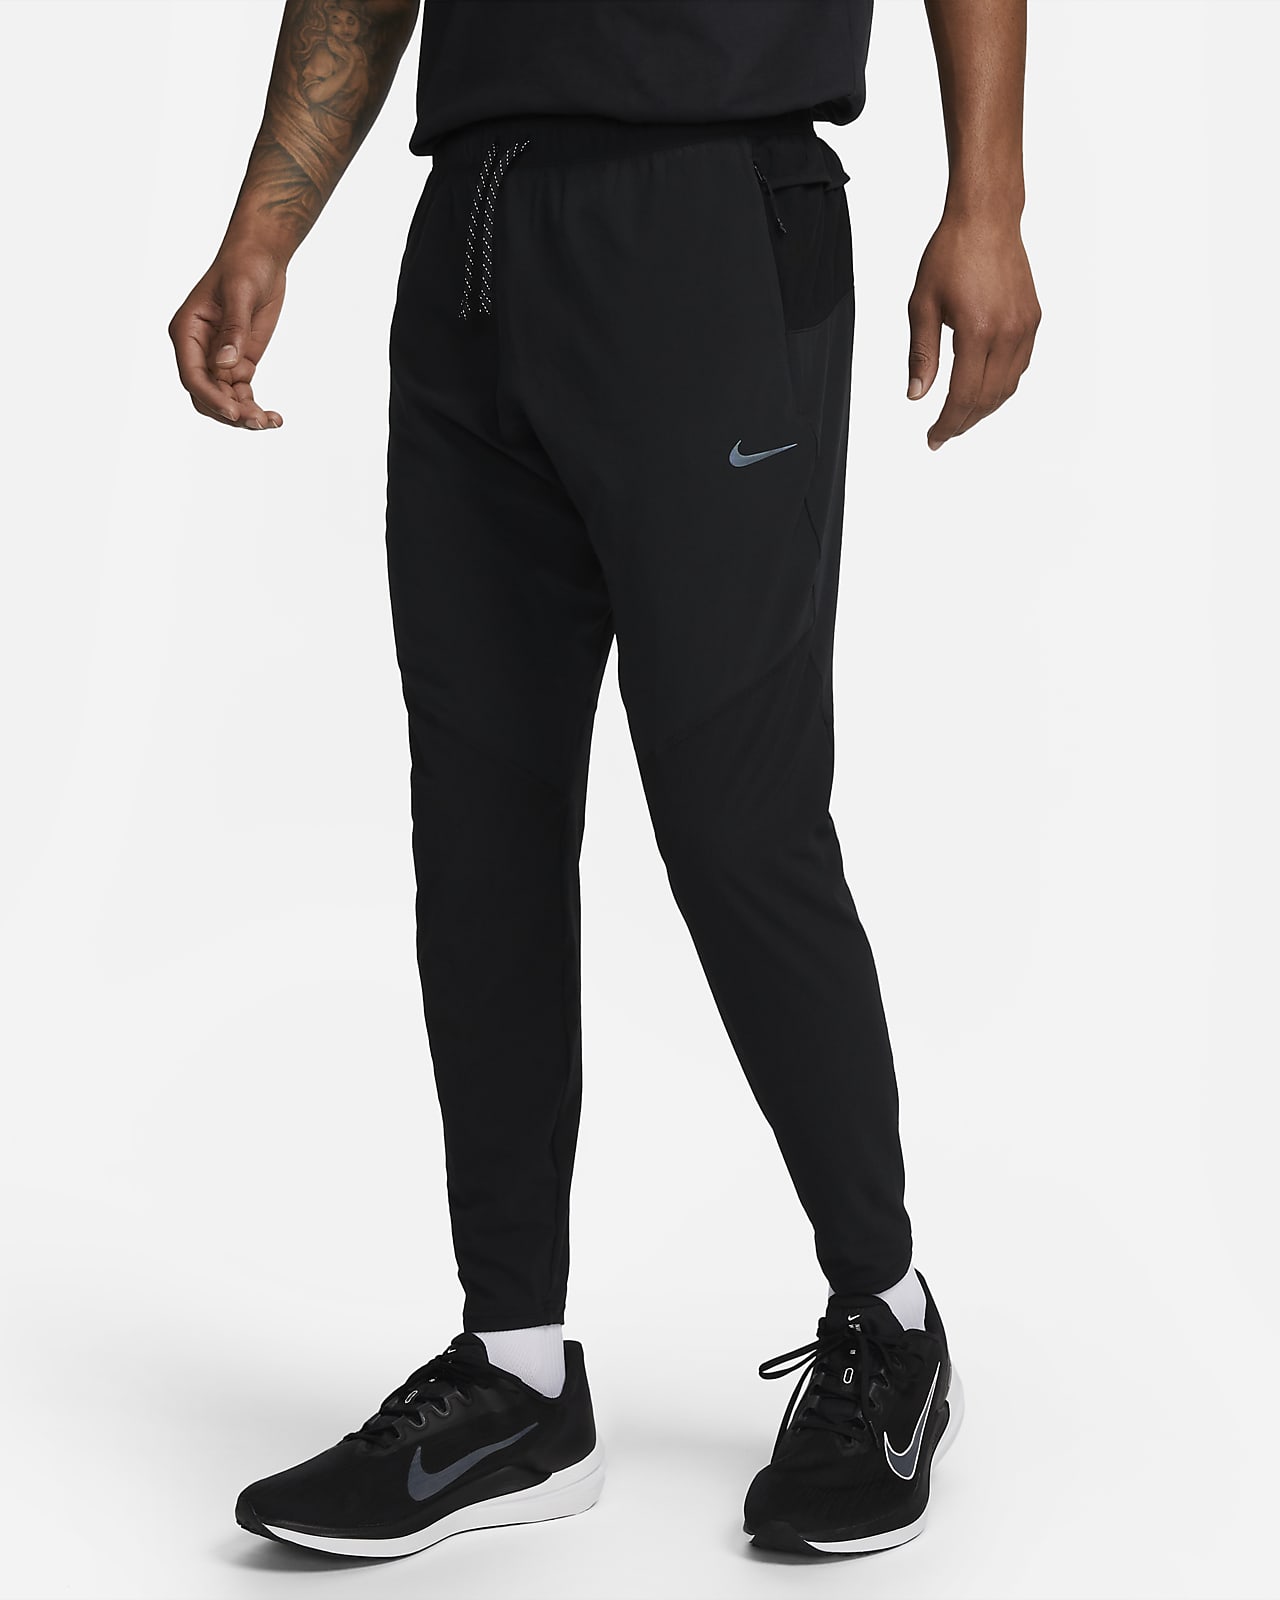 Nike Dri-FIT Running Division Phenom karcsúsított szabású férfi futónadrág